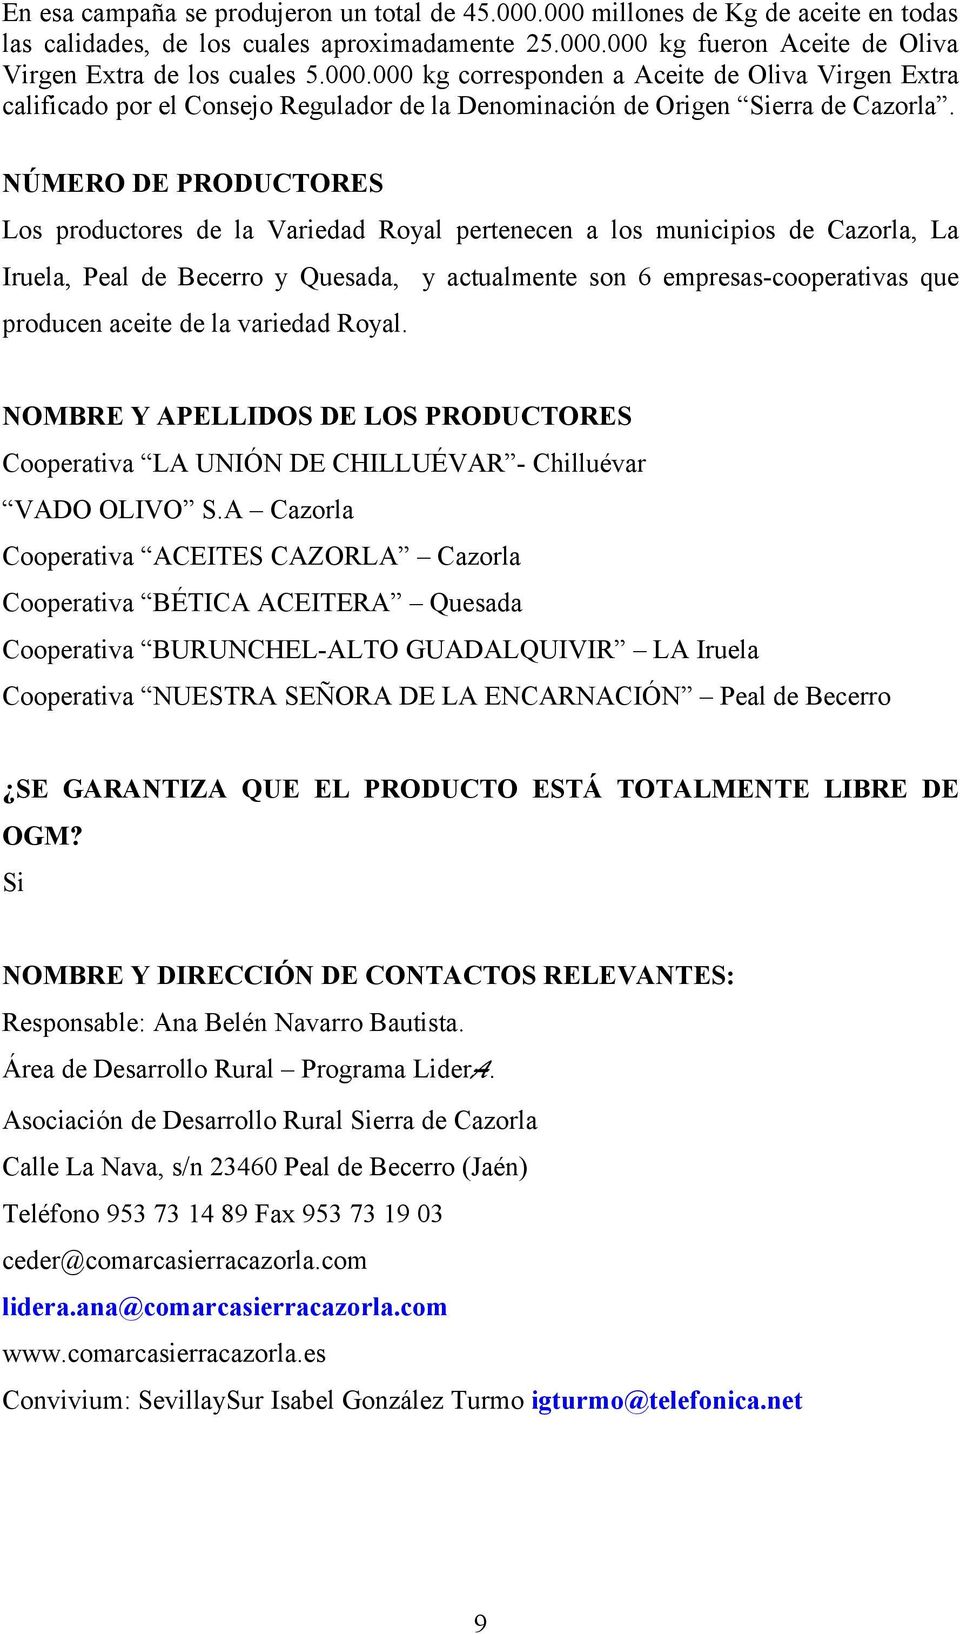 NÚMERO DE PRODUCTORES Los productores de la Variedad Royal pertenecen a los municipios de Cazorla, La Iruela, Peal de Becerro y Quesada, y actualmente son 6 empresascooperativas que producen aceite